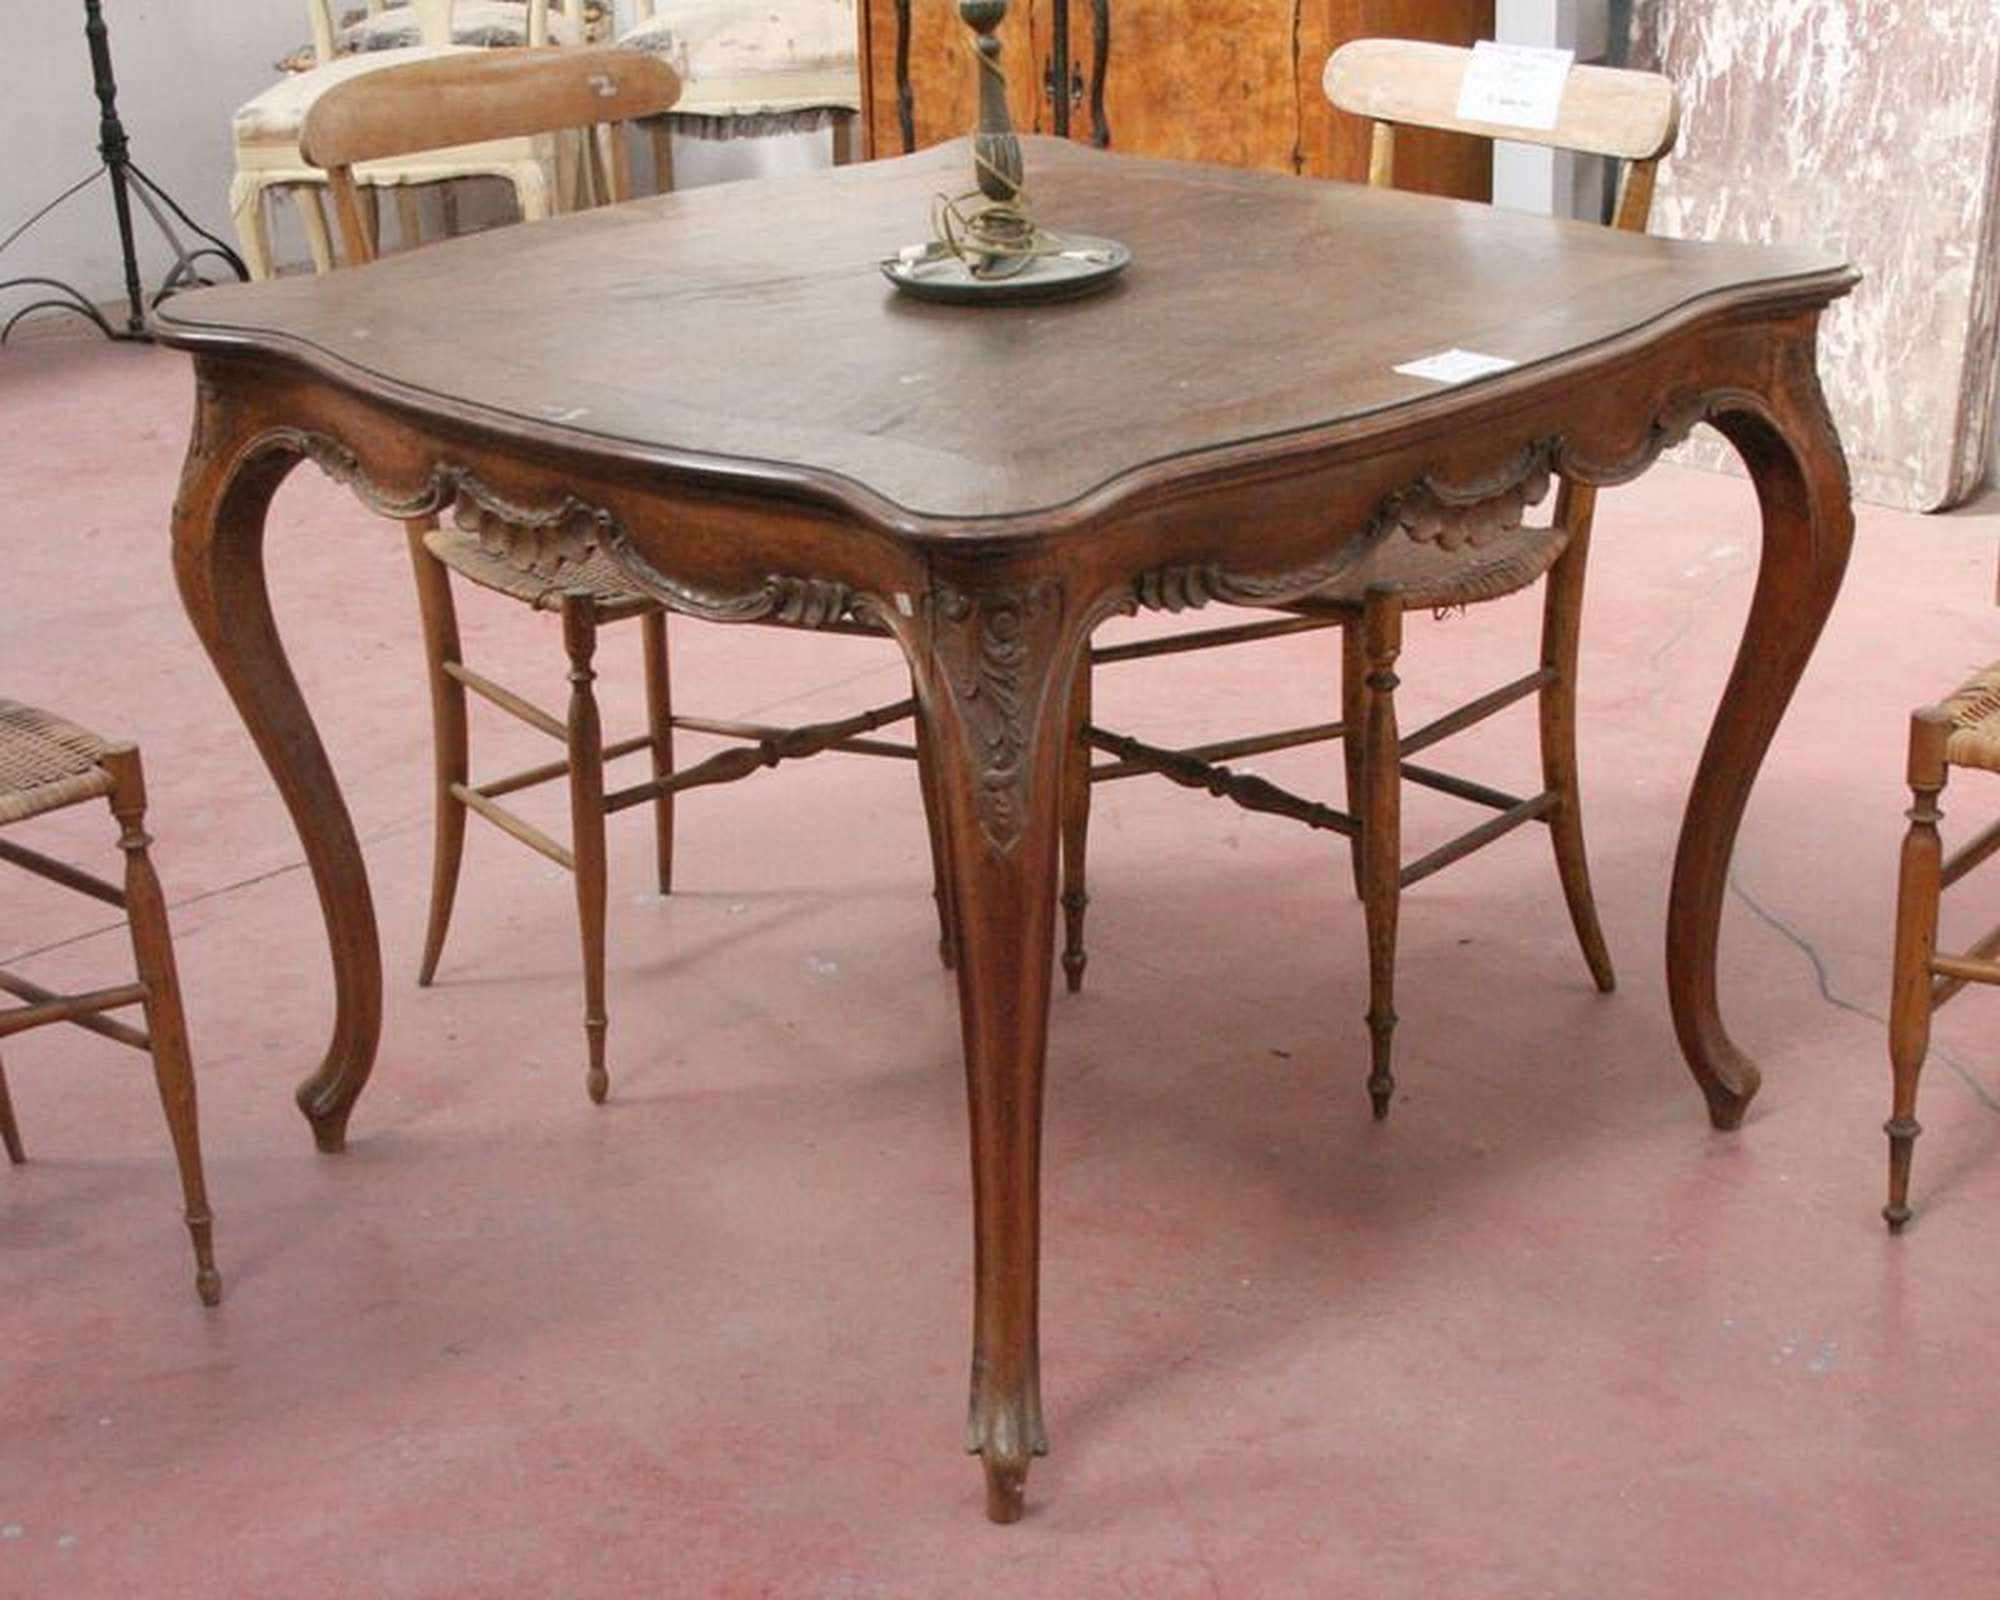 Antico tavolo in legno. Epoca inizi 1900. - Tavoli in legno - Tavoli e complementi - Prodotti - Antichità Fiorillo